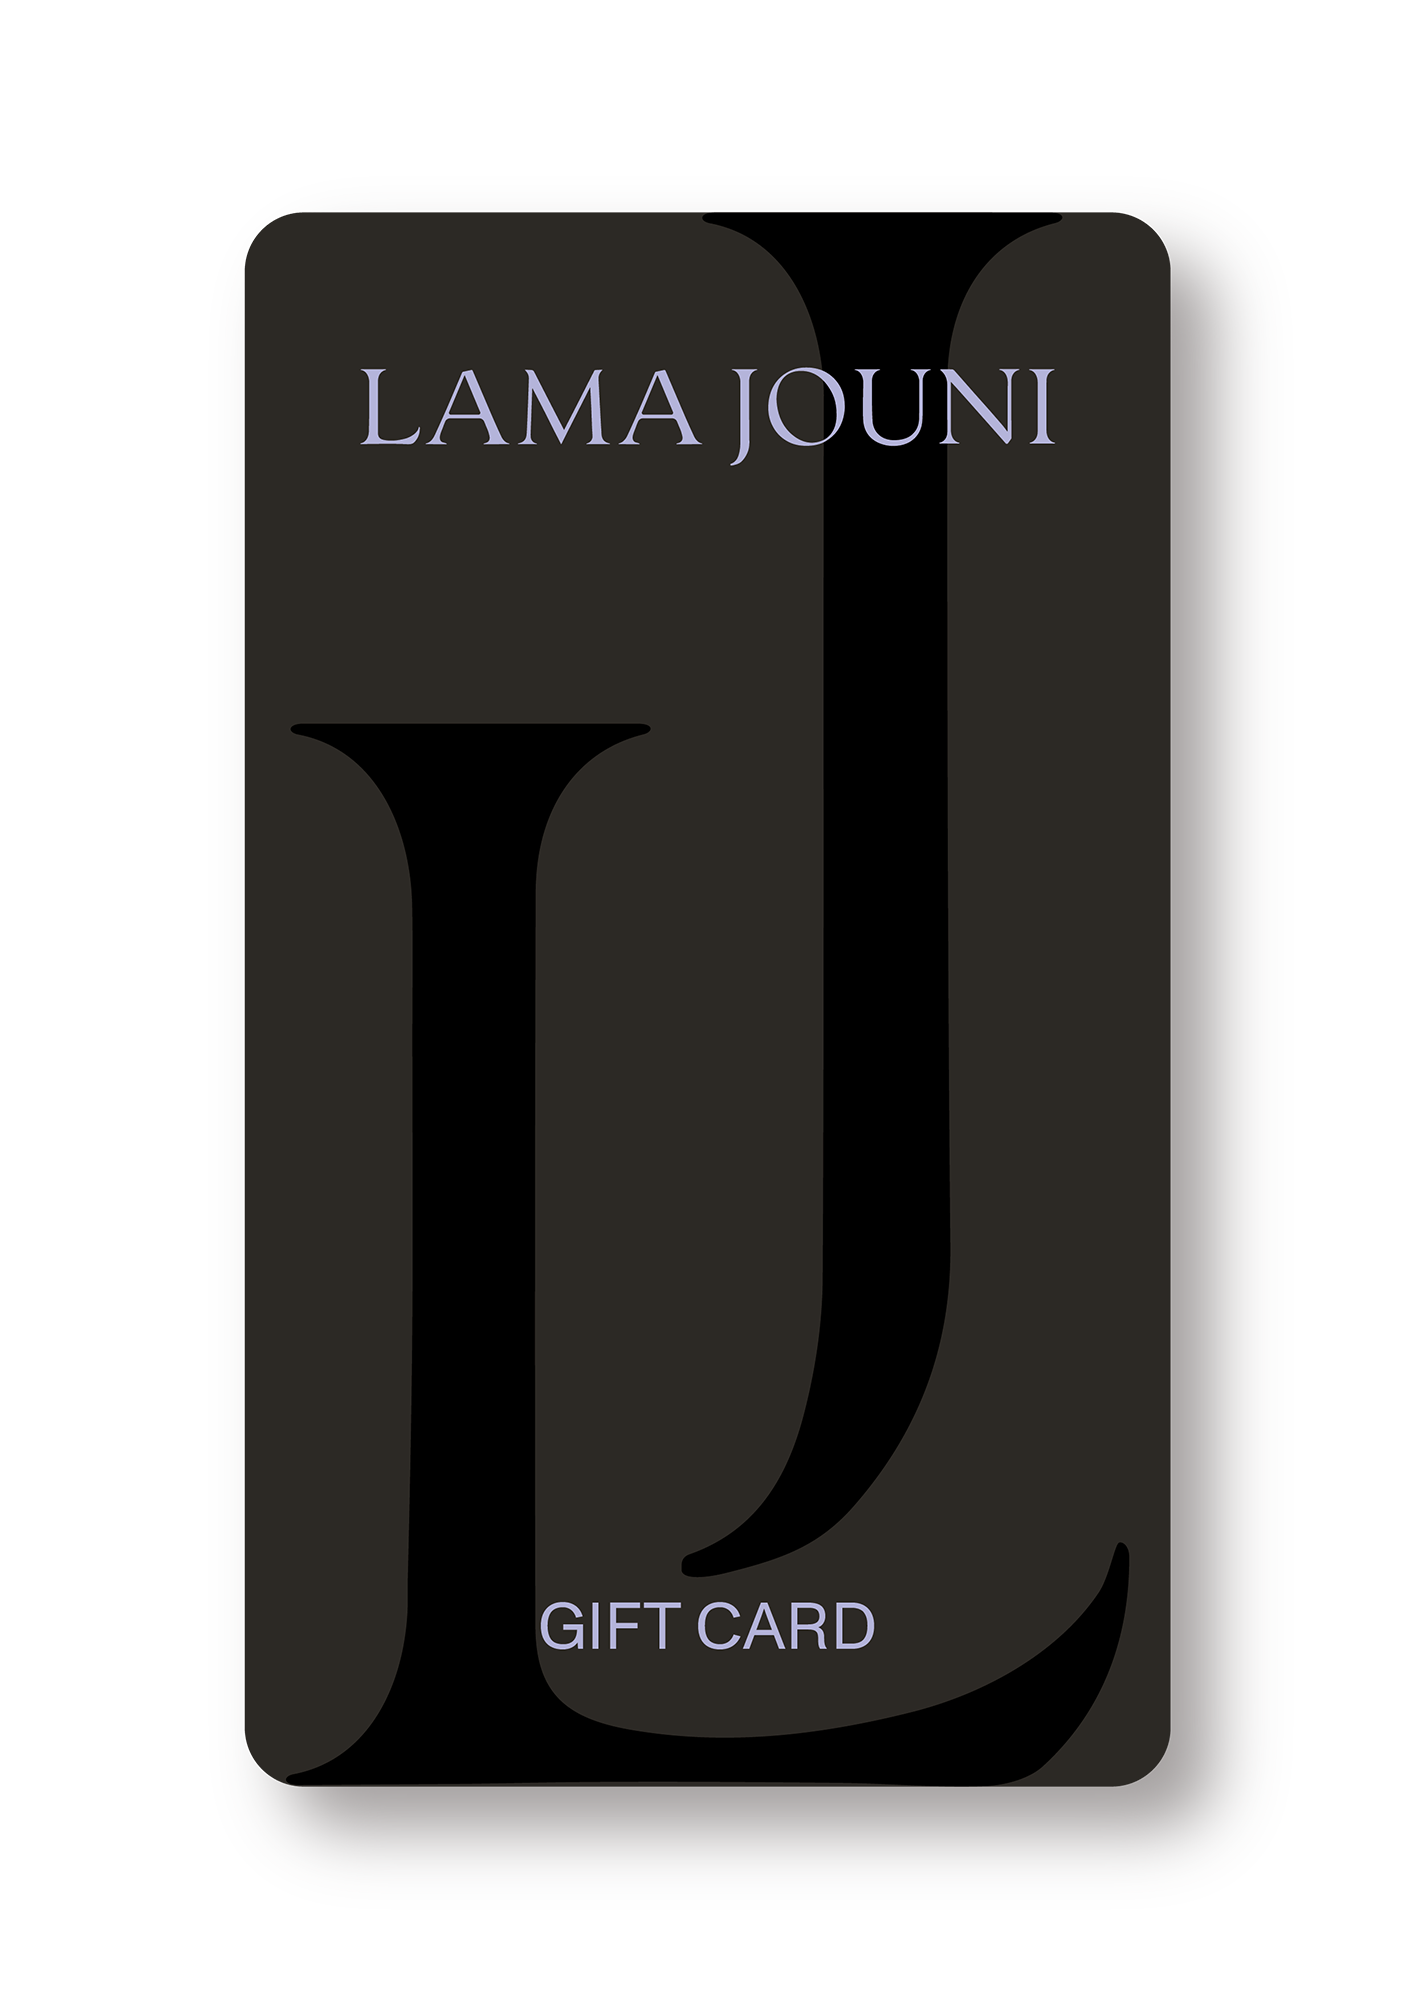 LAMA JOUNI GIFT CARD